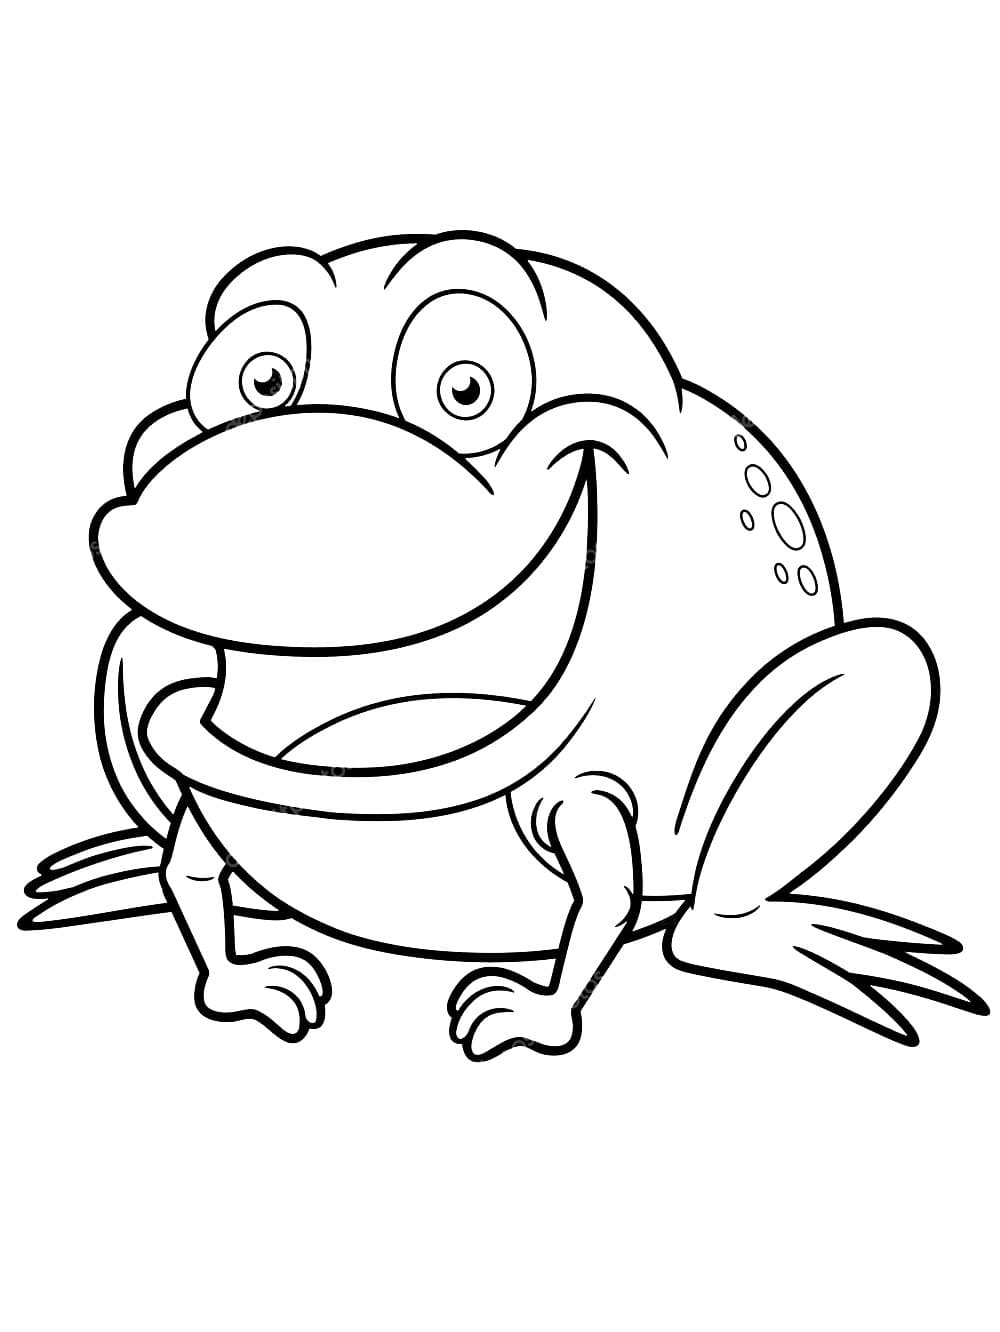 행복한 개구리 coloring page